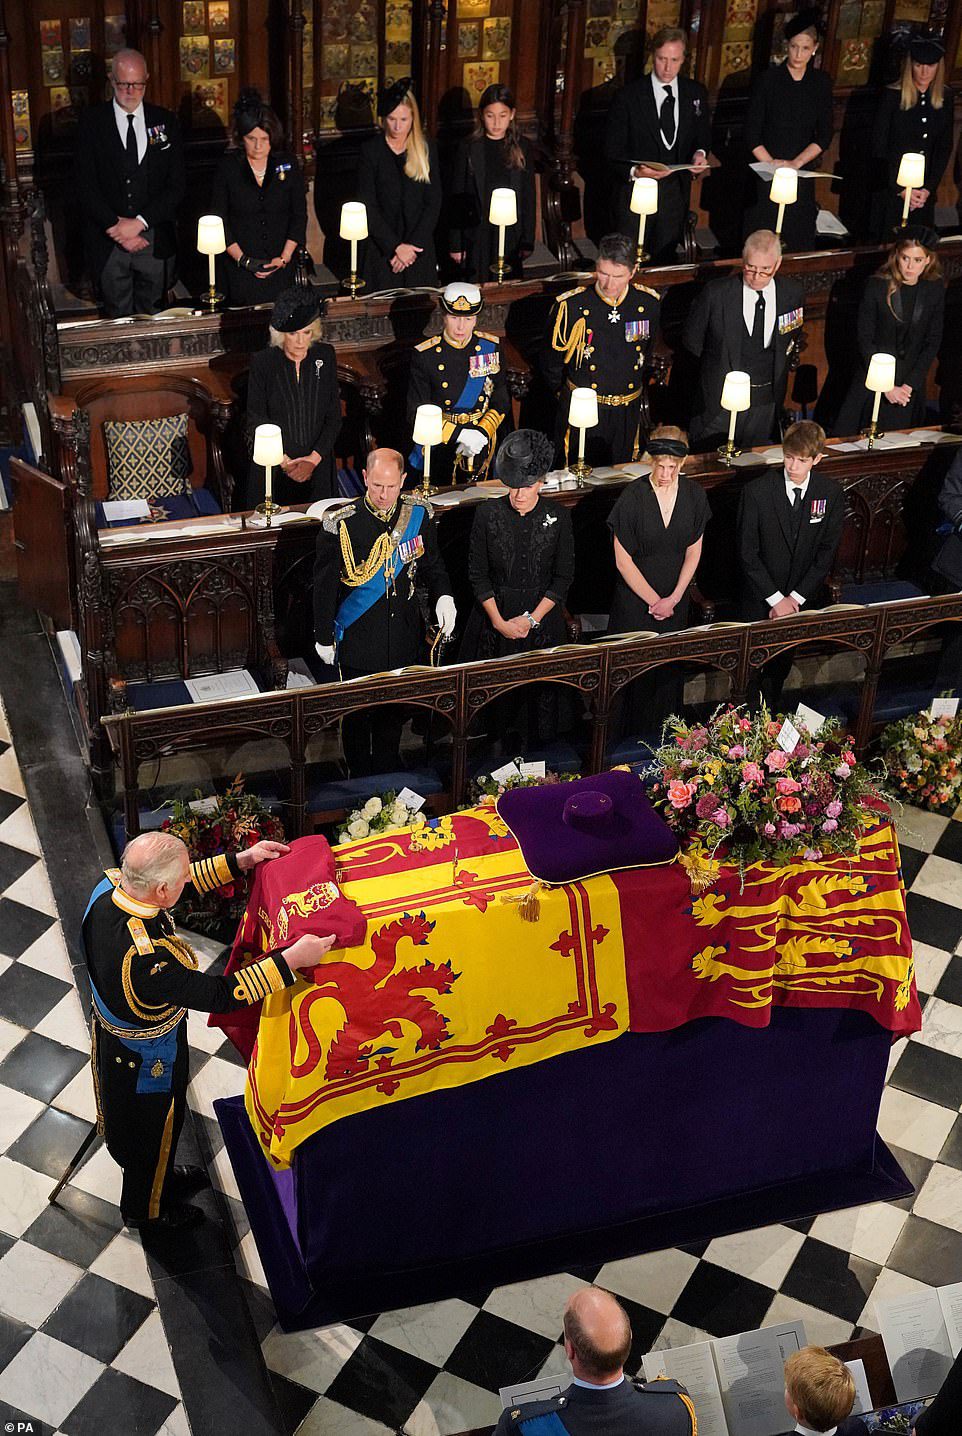 Koning Karel III legt de kleur van het kamp van de Queen's Company van de Grenadier Guards op de kist van Hare Majesteit tijdens de inbedrijfstellingsceremonie van maandag